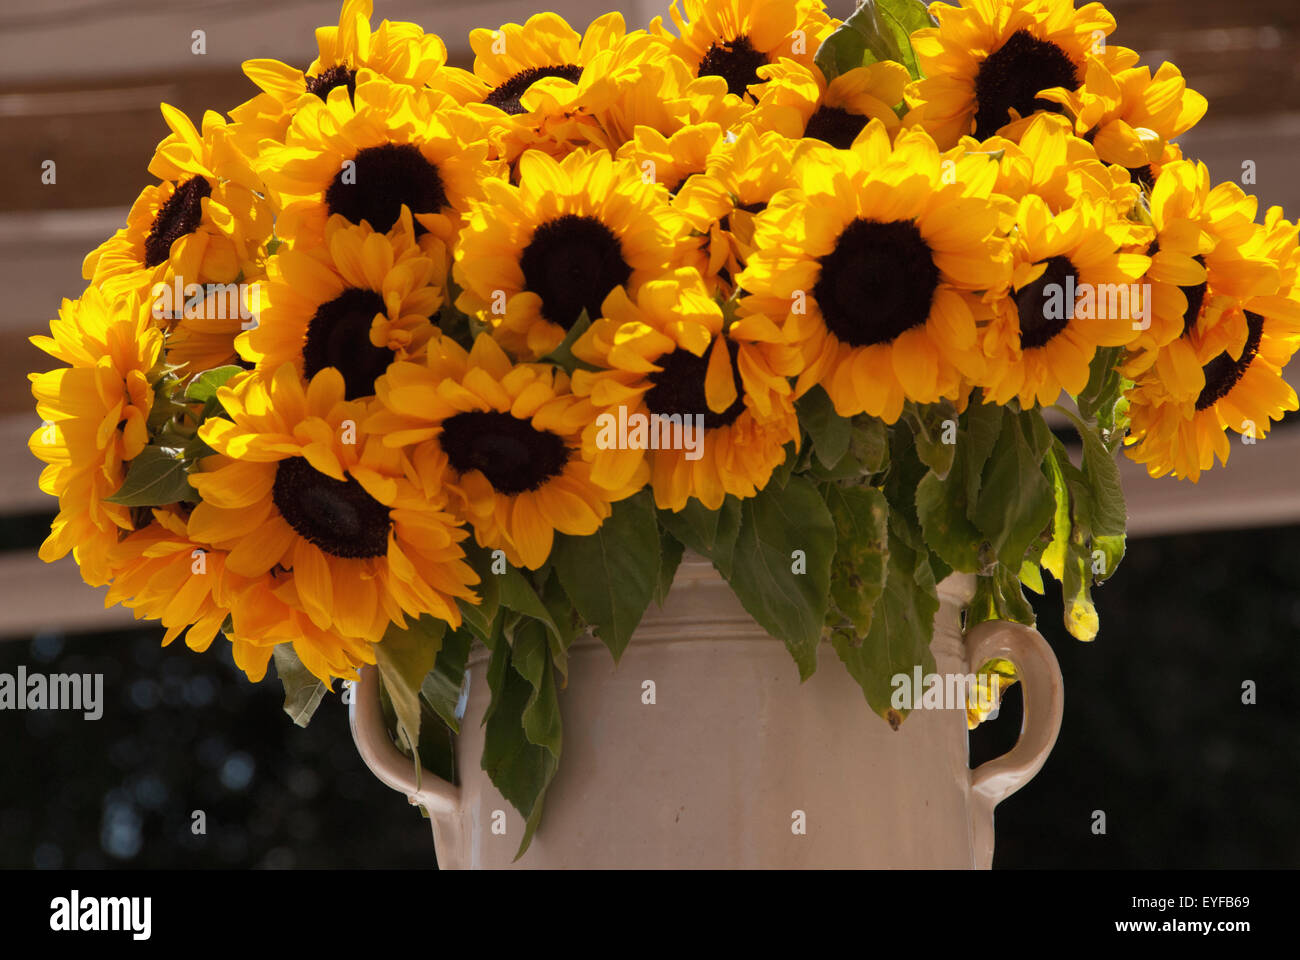 Sunflowers In A Ceramic Vase, Puglia, Italy Stock Photo